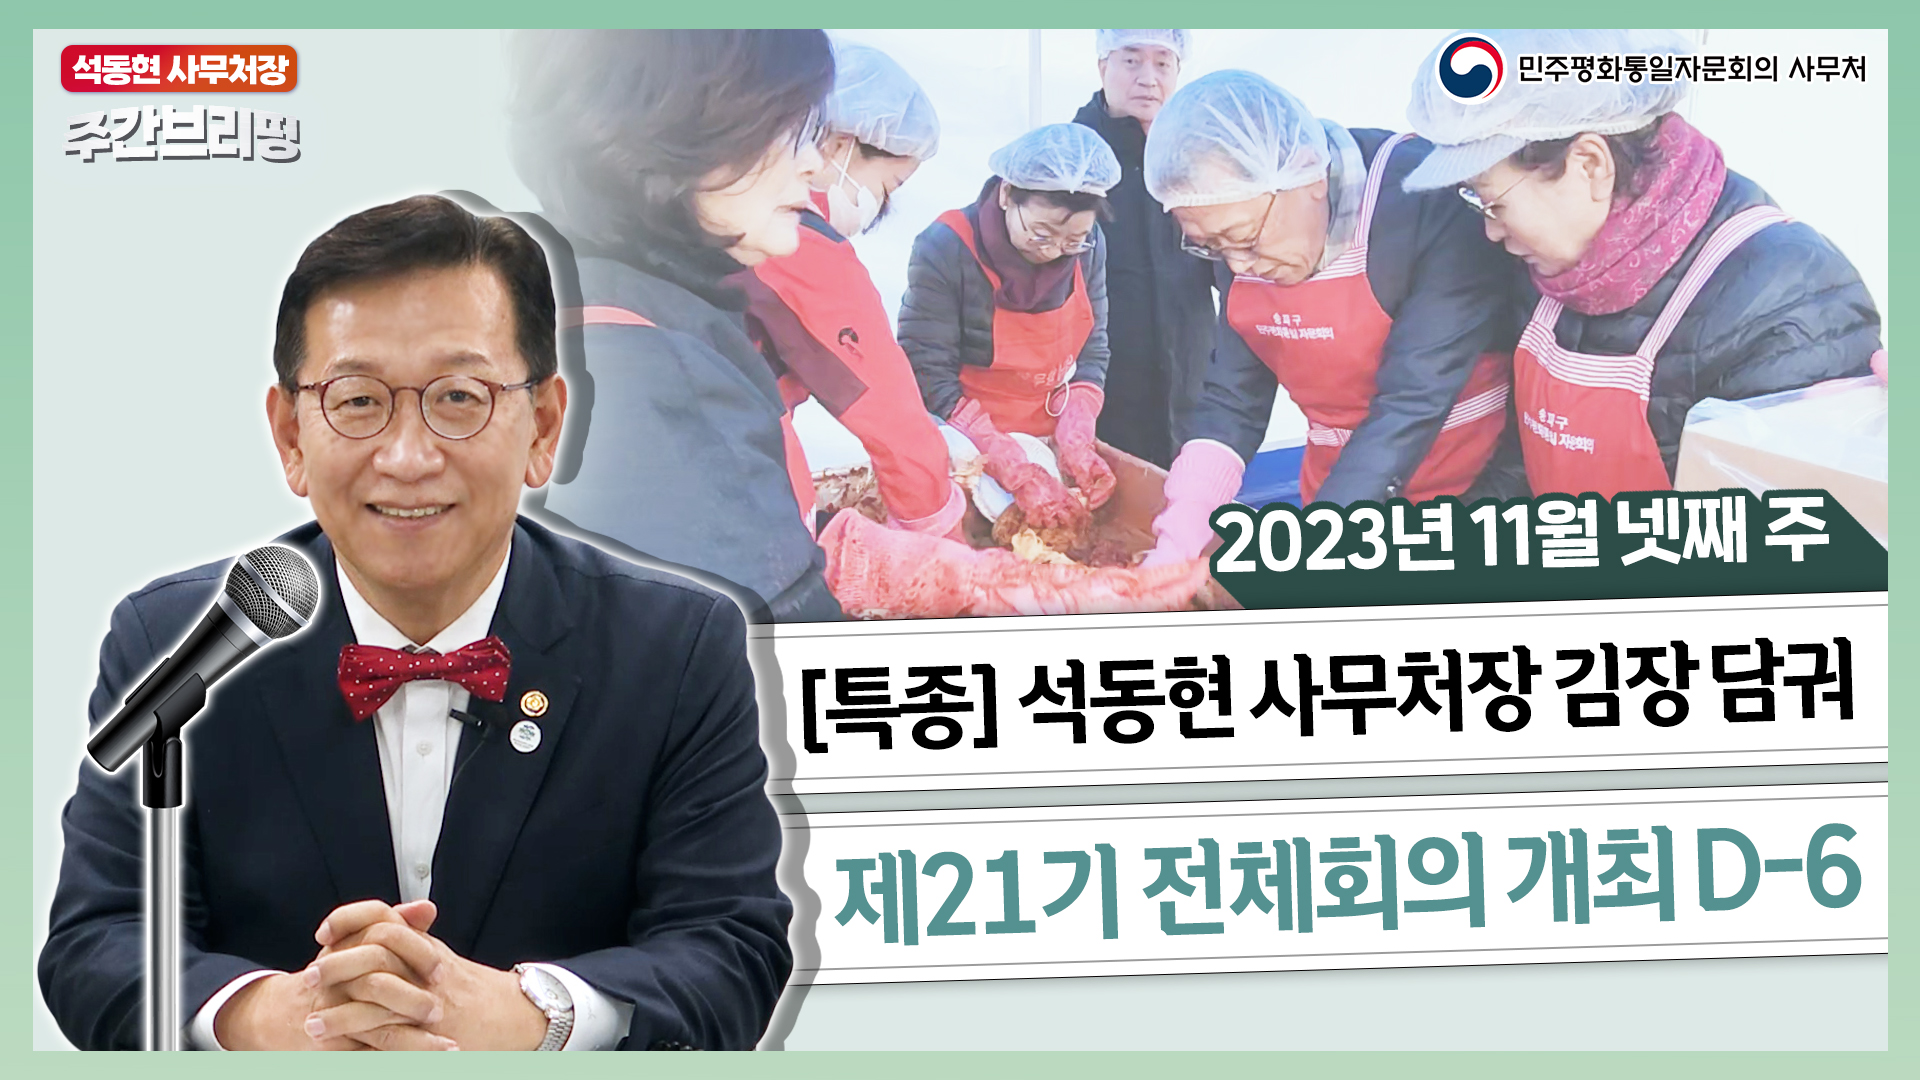 주간브리핑 | '김치의 날' 김장 행사 연 곳은? 제21기 전체회의 D-6